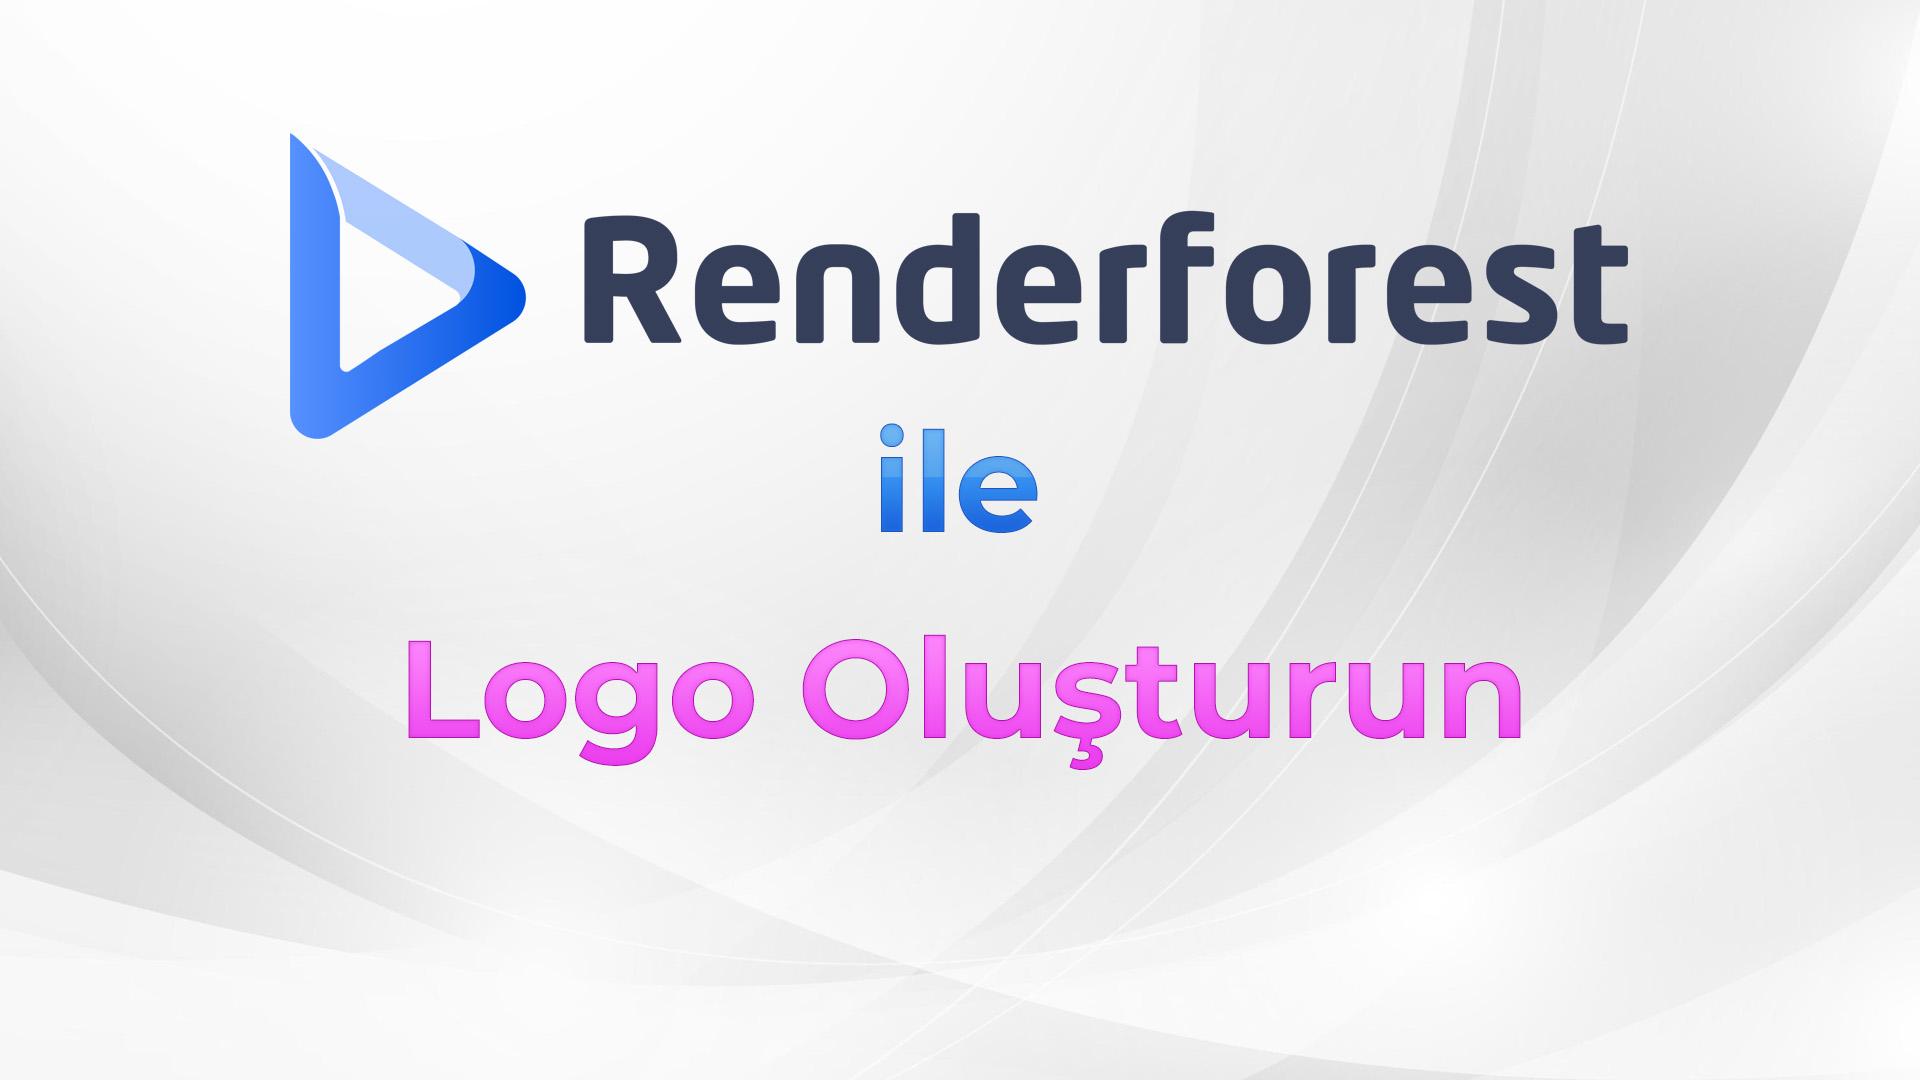 Renderforest ile Logo Oluşturun